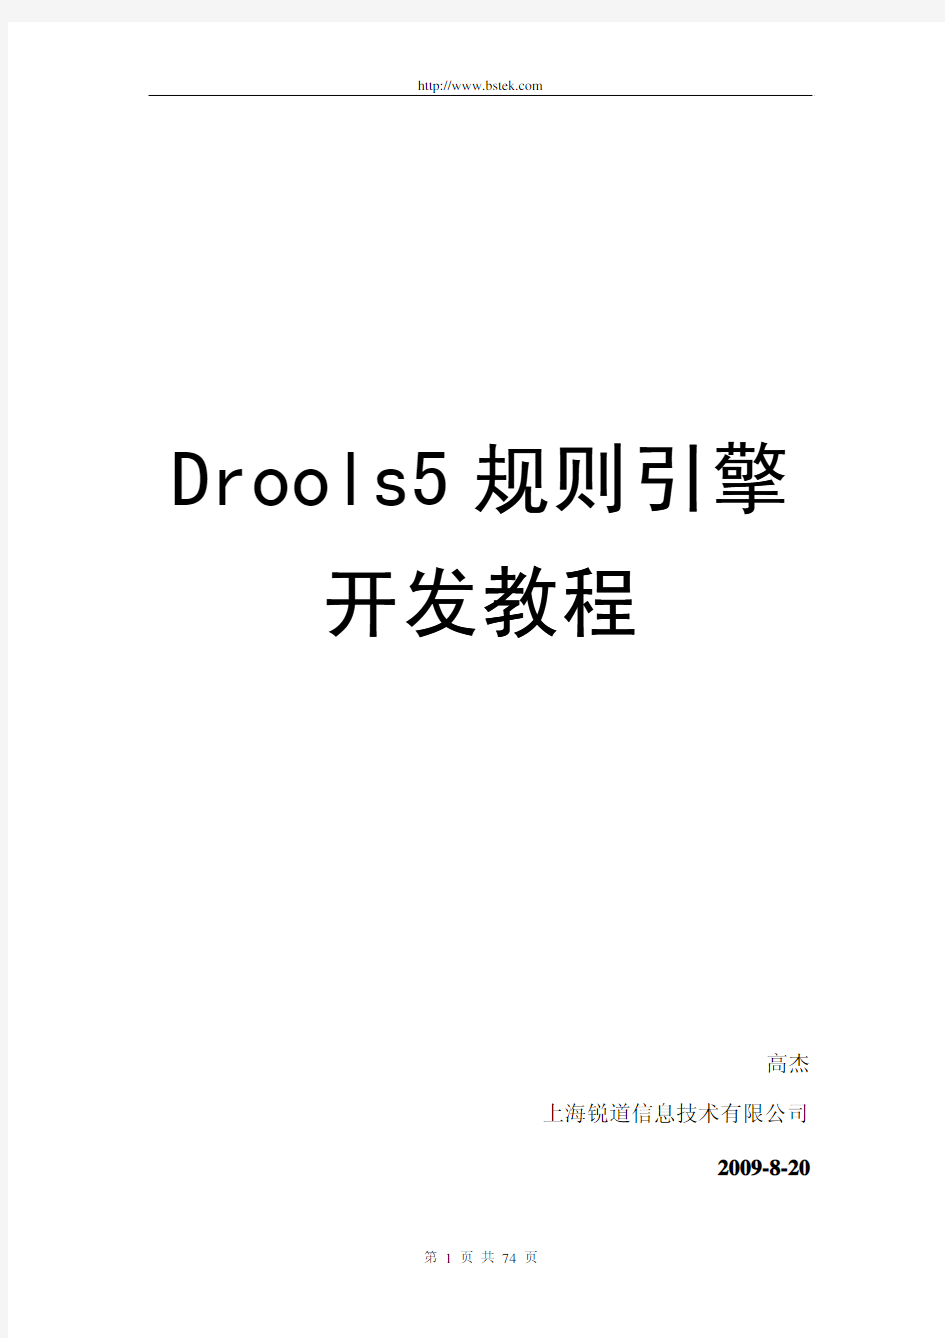 Drools开发教程、规则引擎